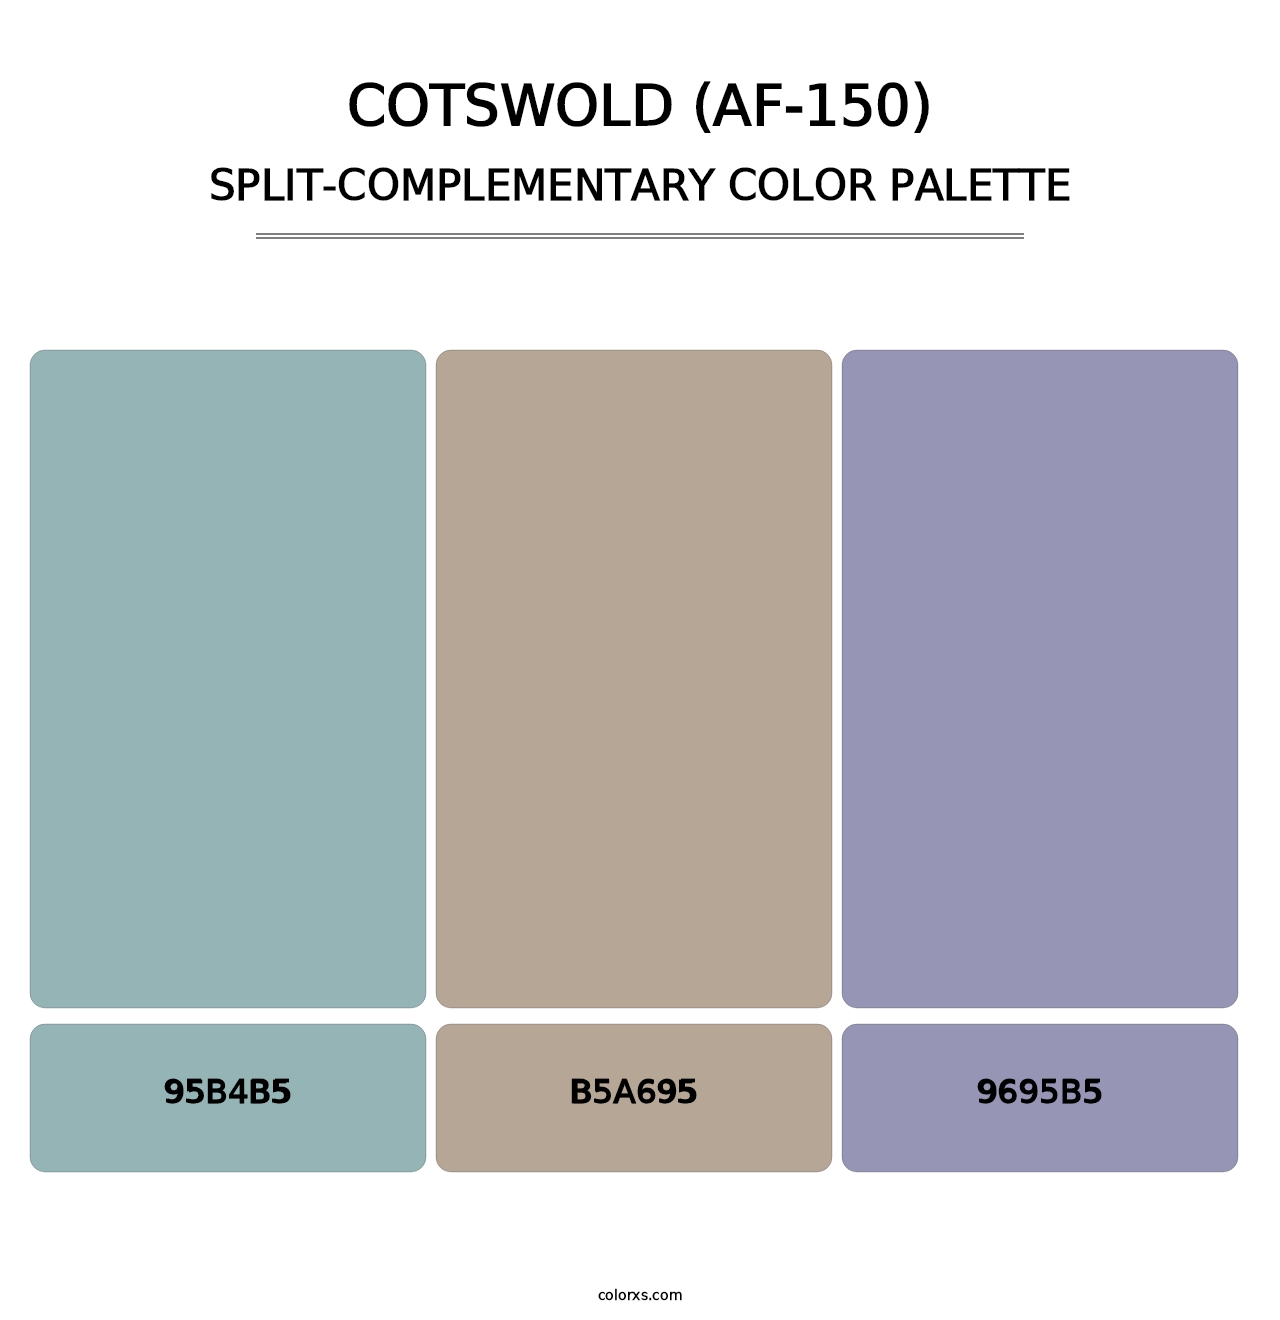 Cotswold (AF-150) - Split-Complementary Color Palette